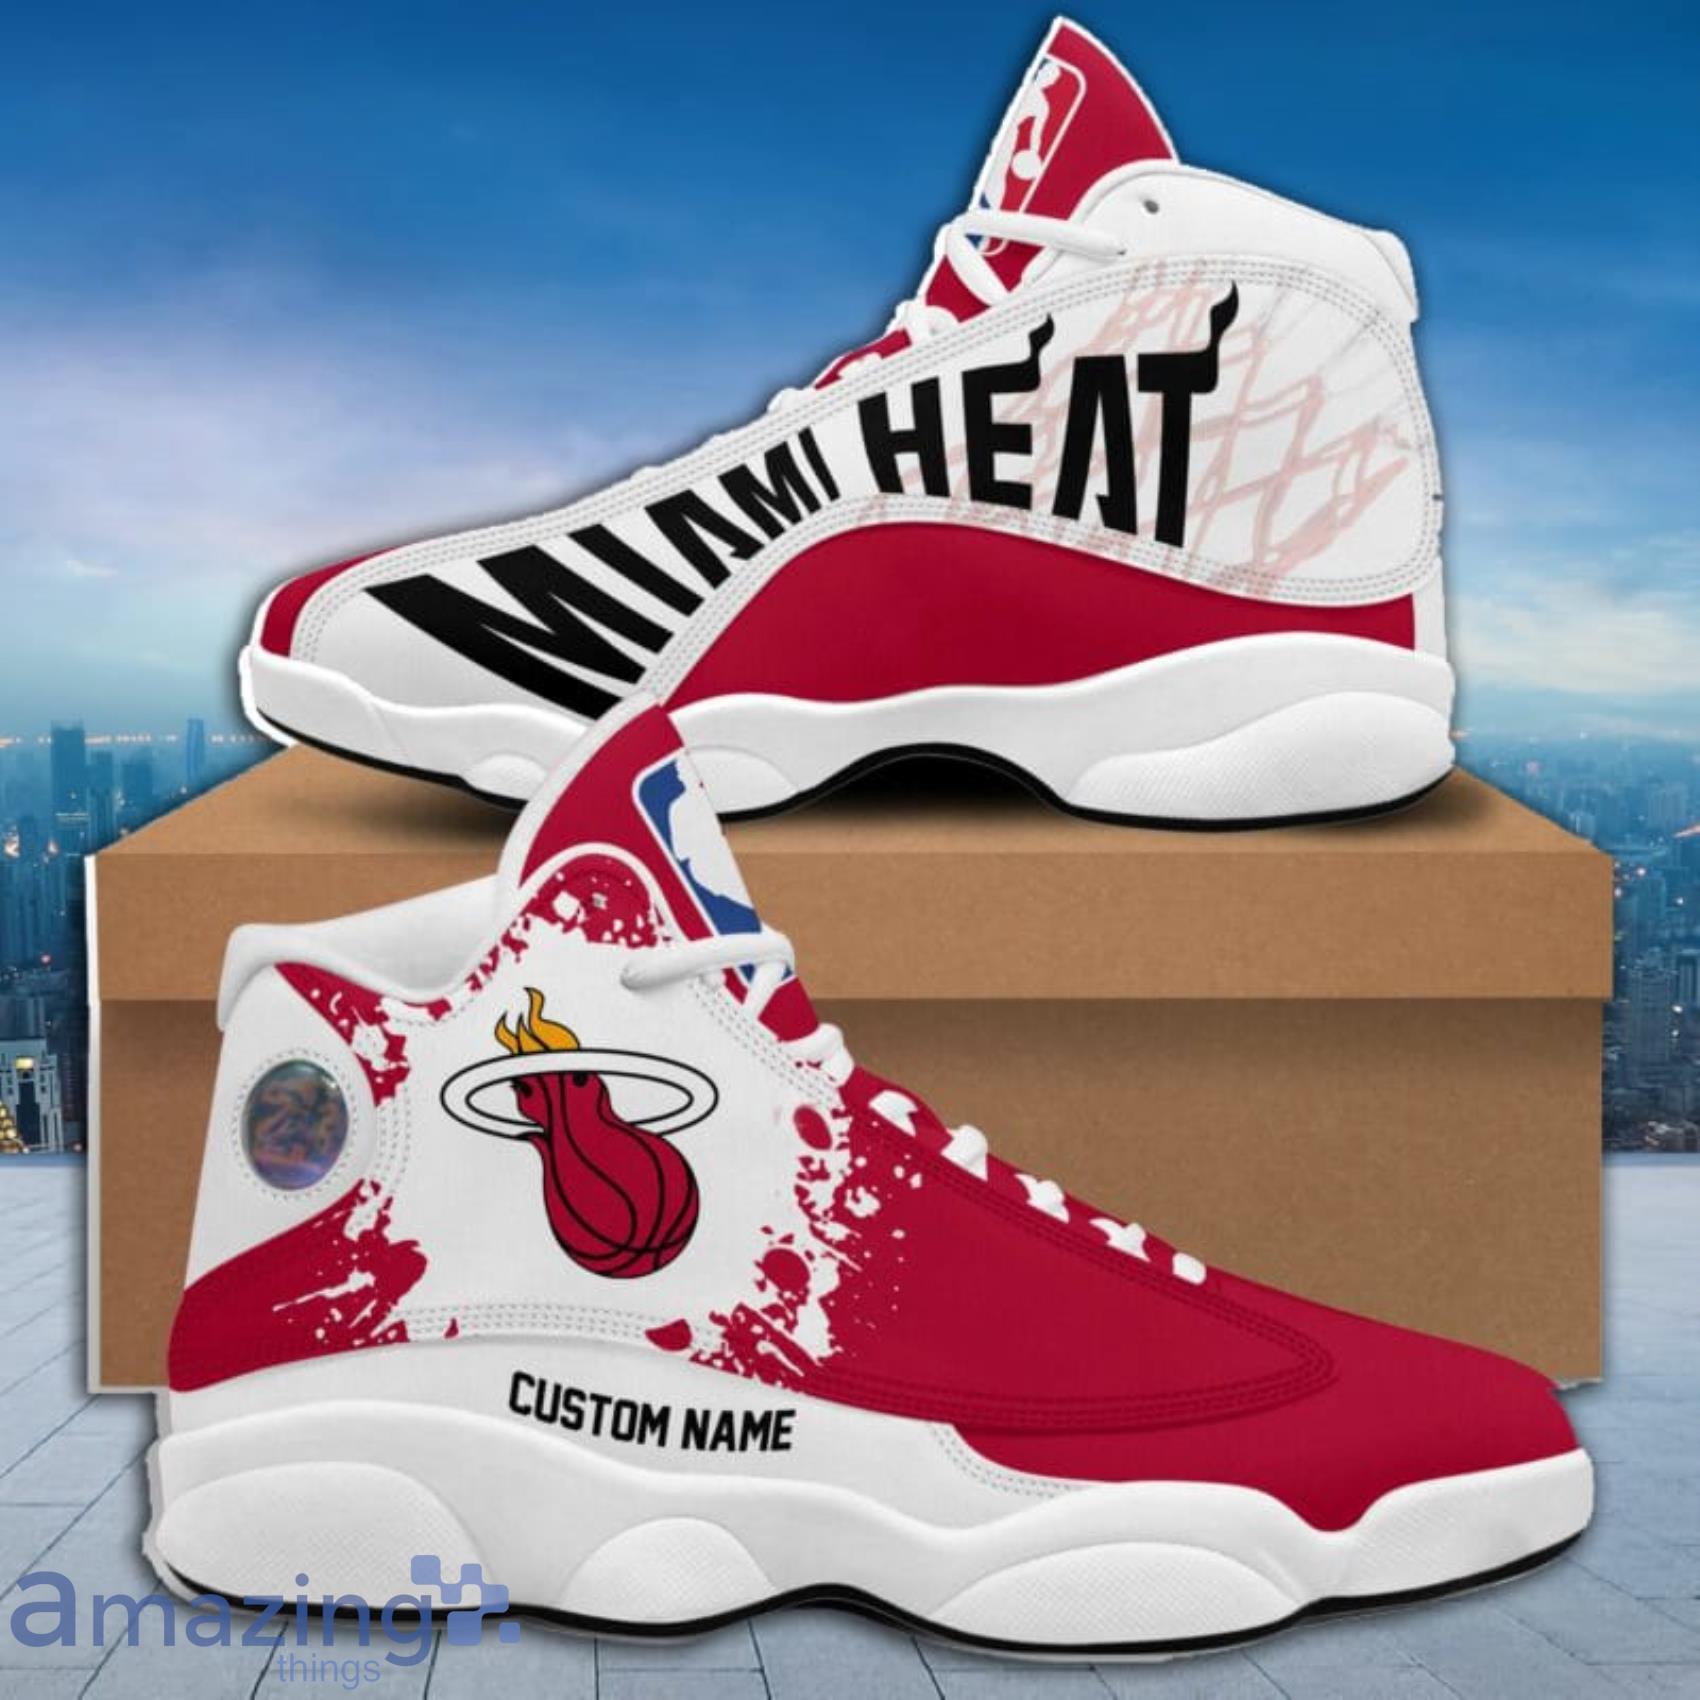 Air Jordan 13 Miami Heat Custom